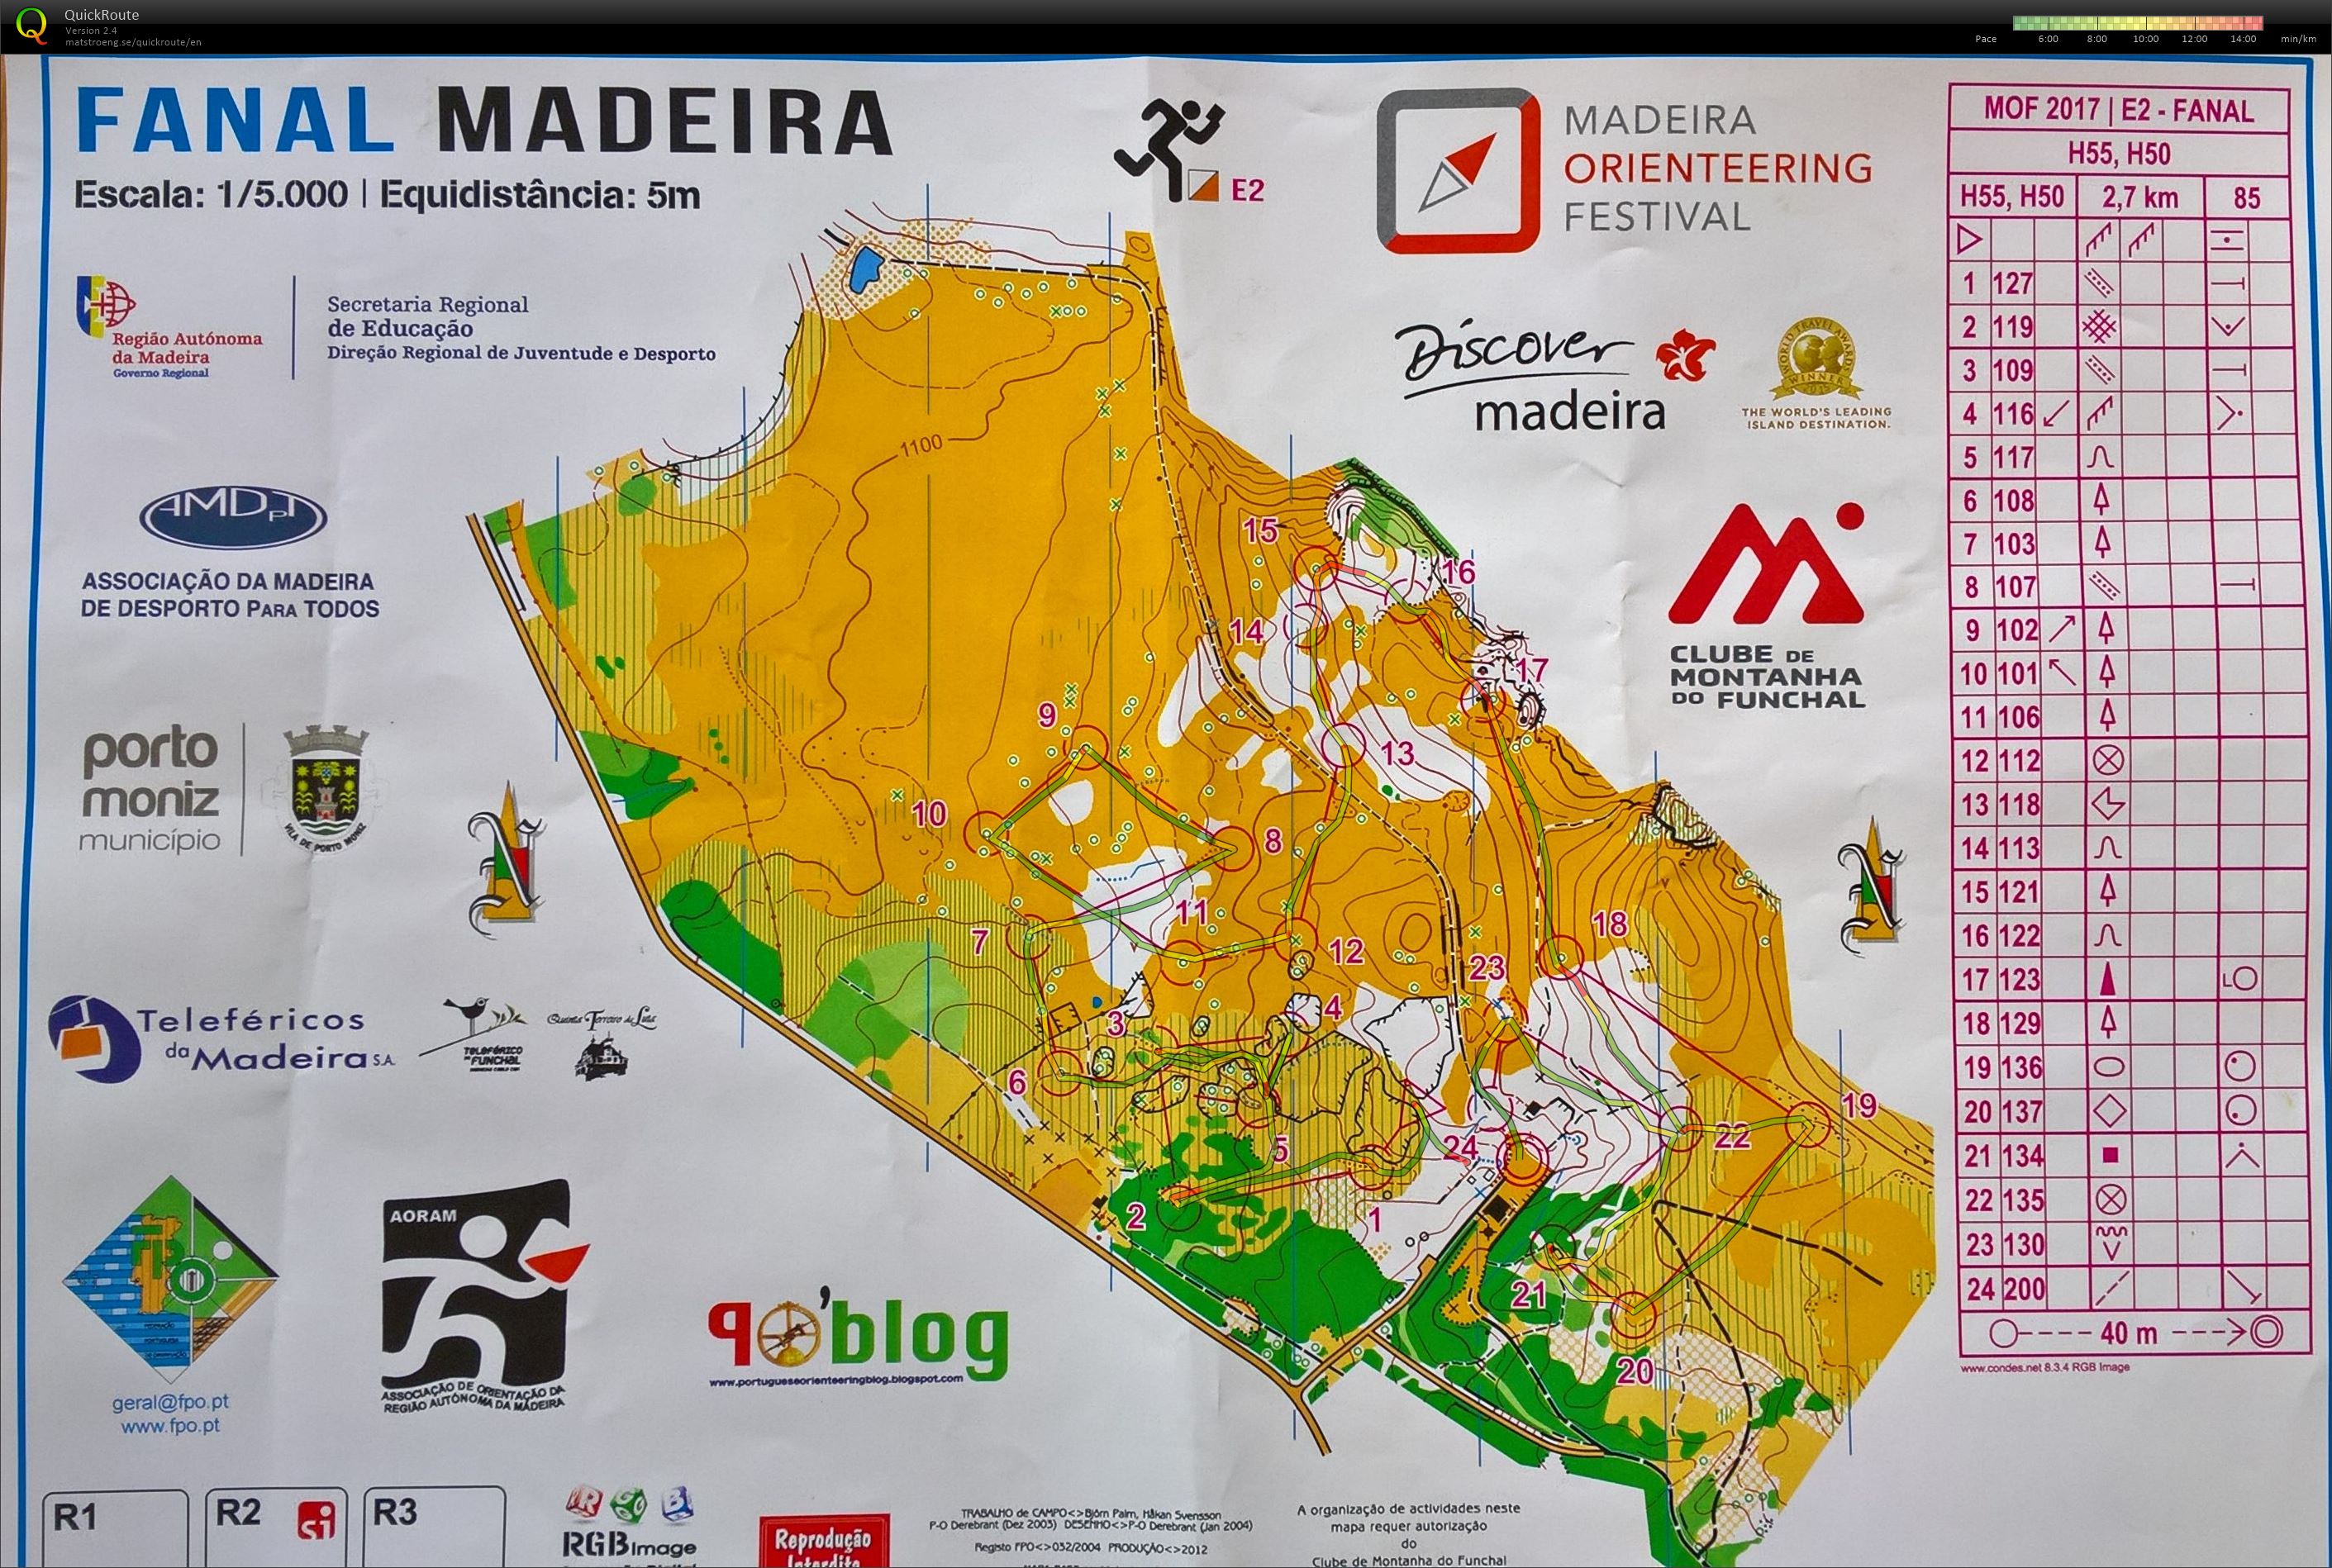 Madeira O-Festival (2017-02-10)